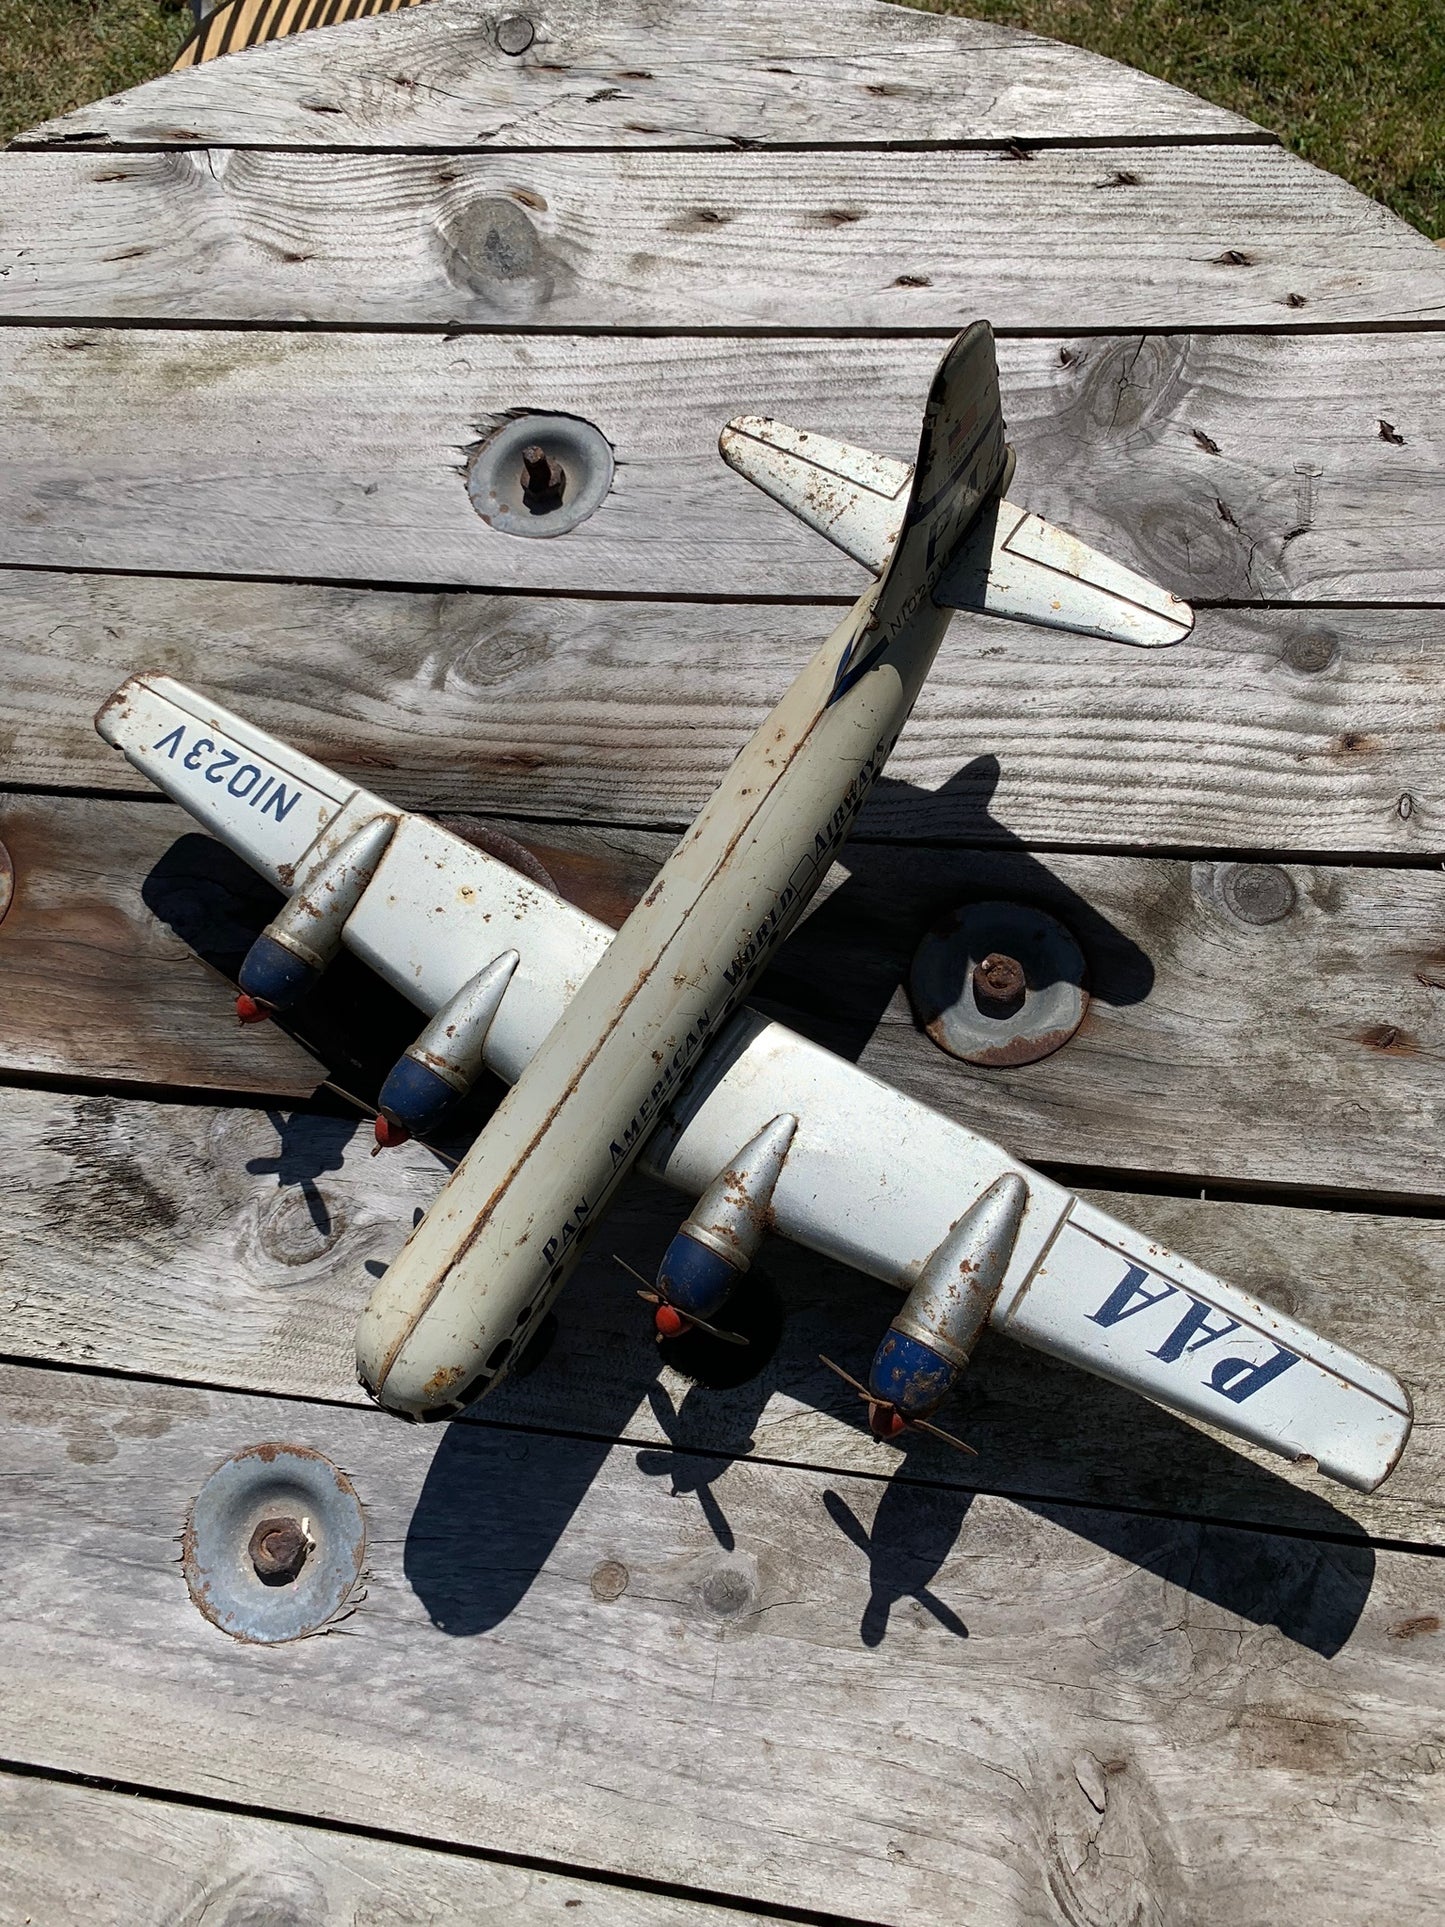 Altes Spielzeugflugzeug aus den 1950er Jahren